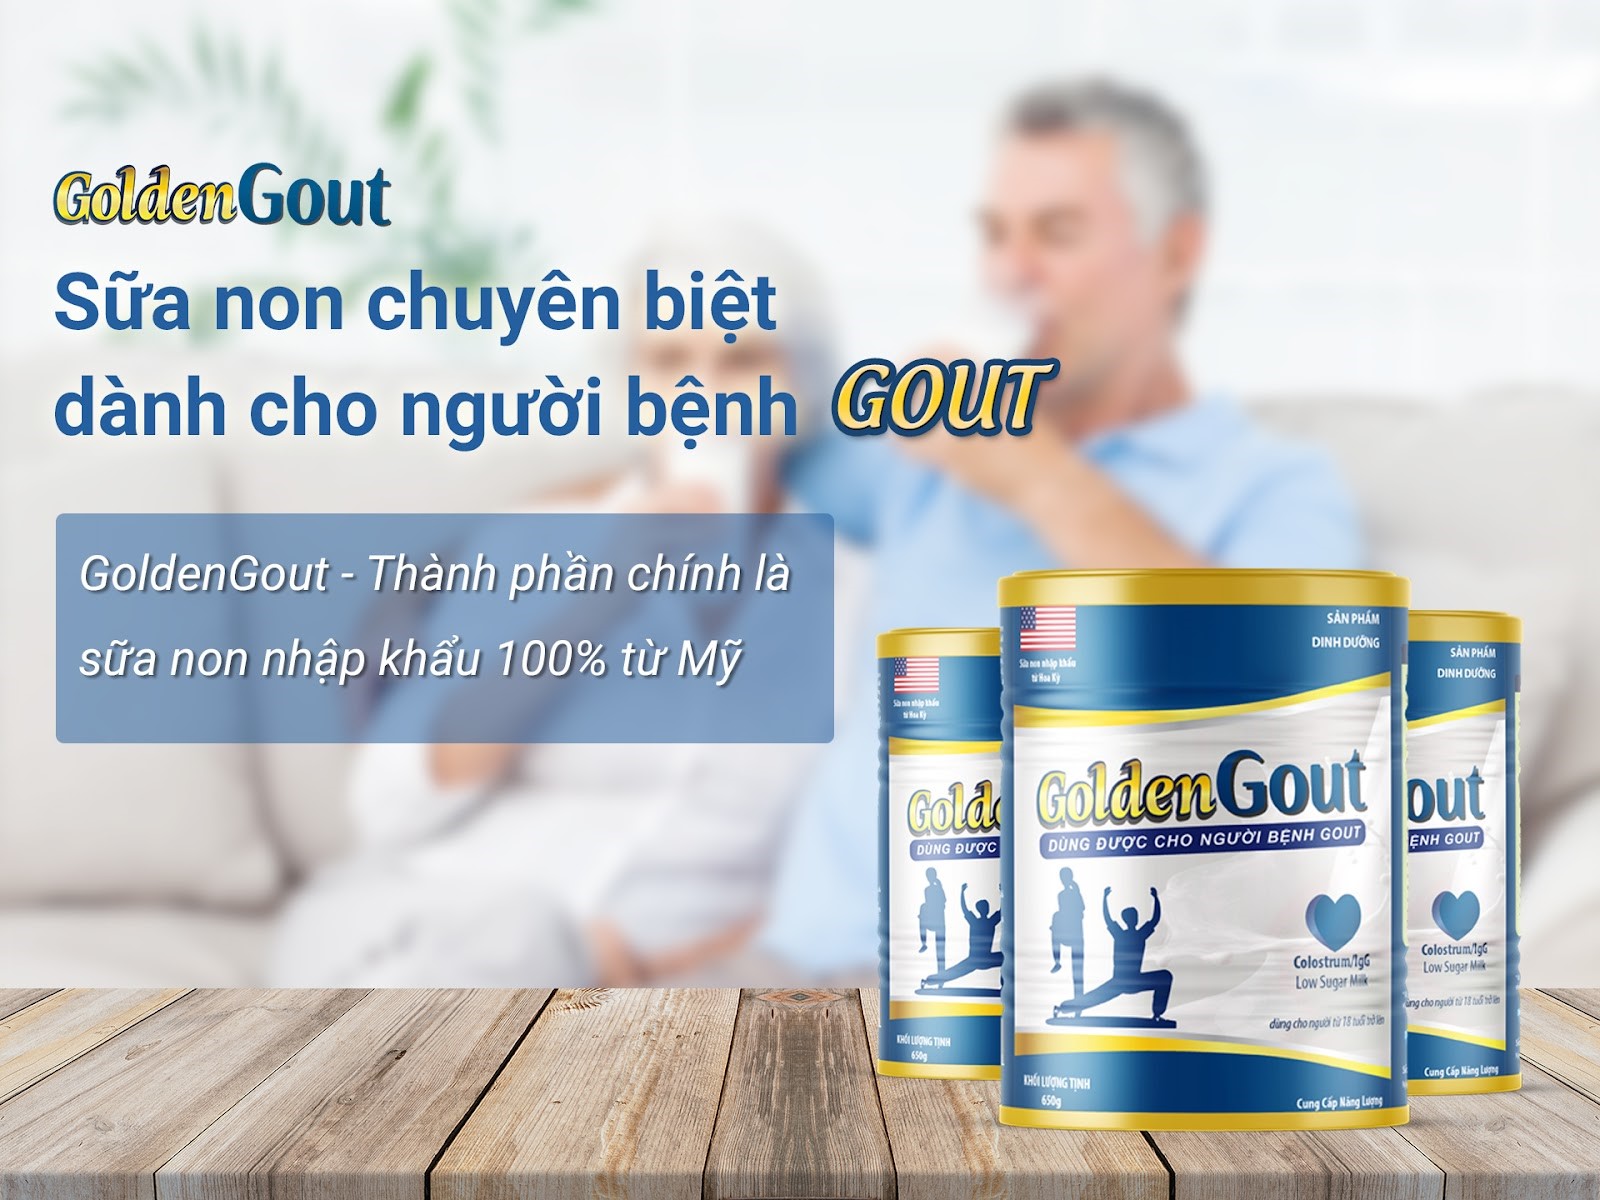 Công thức của GoldenGout sữa non gồm những thành phần chính nào?
